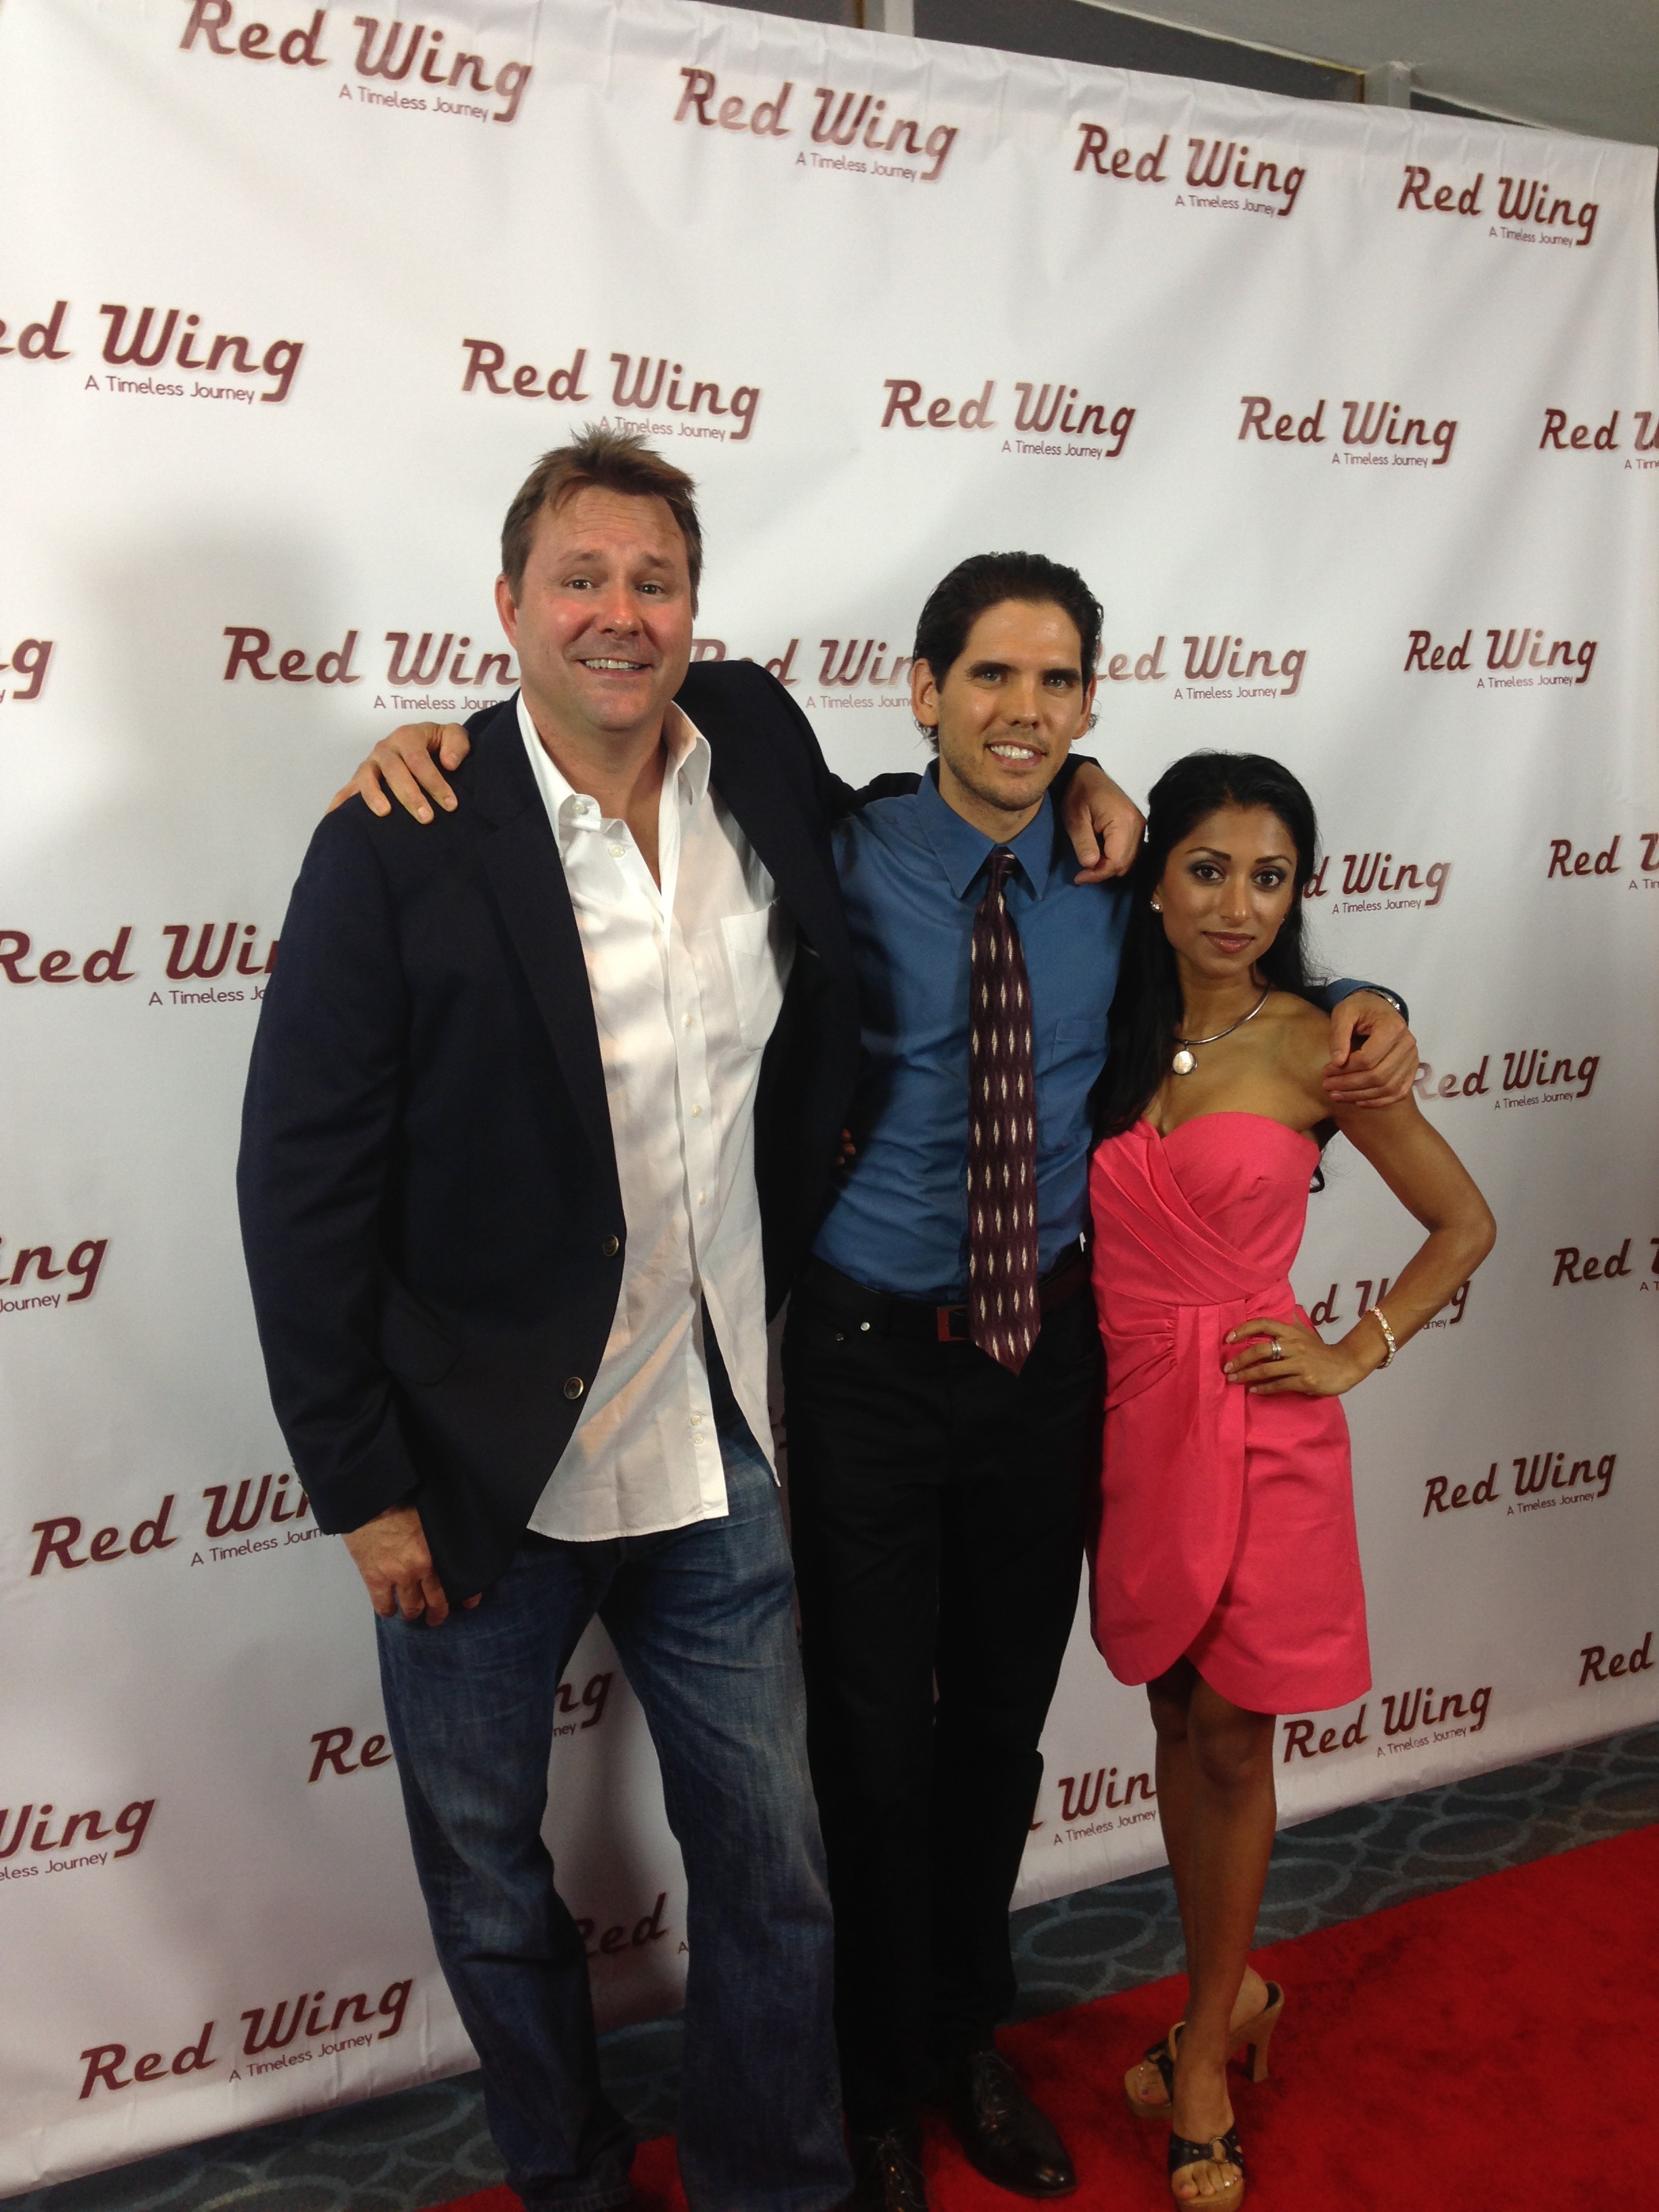 Premiere of Red Wing: Will Wallace, Matt O'Neill, Lovlee Carroll